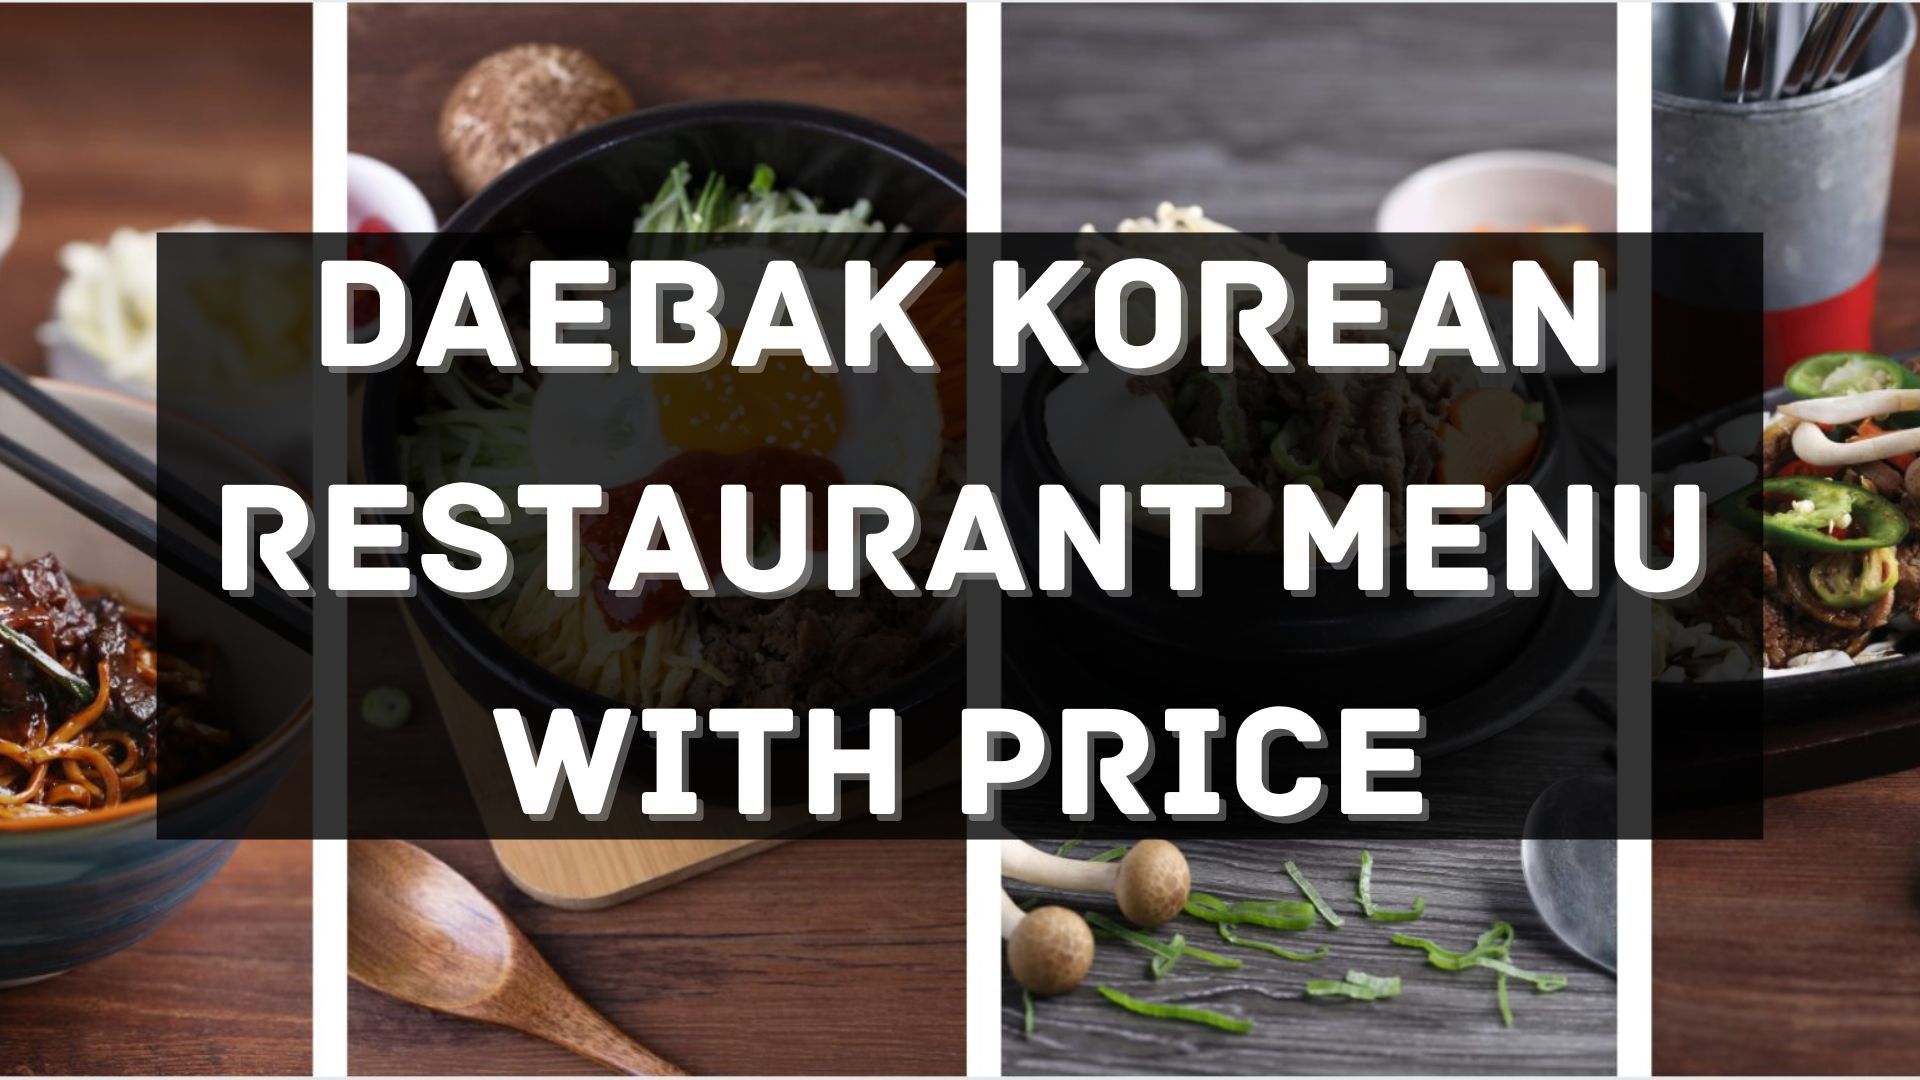 daebak korean restaurant menu prices singapore